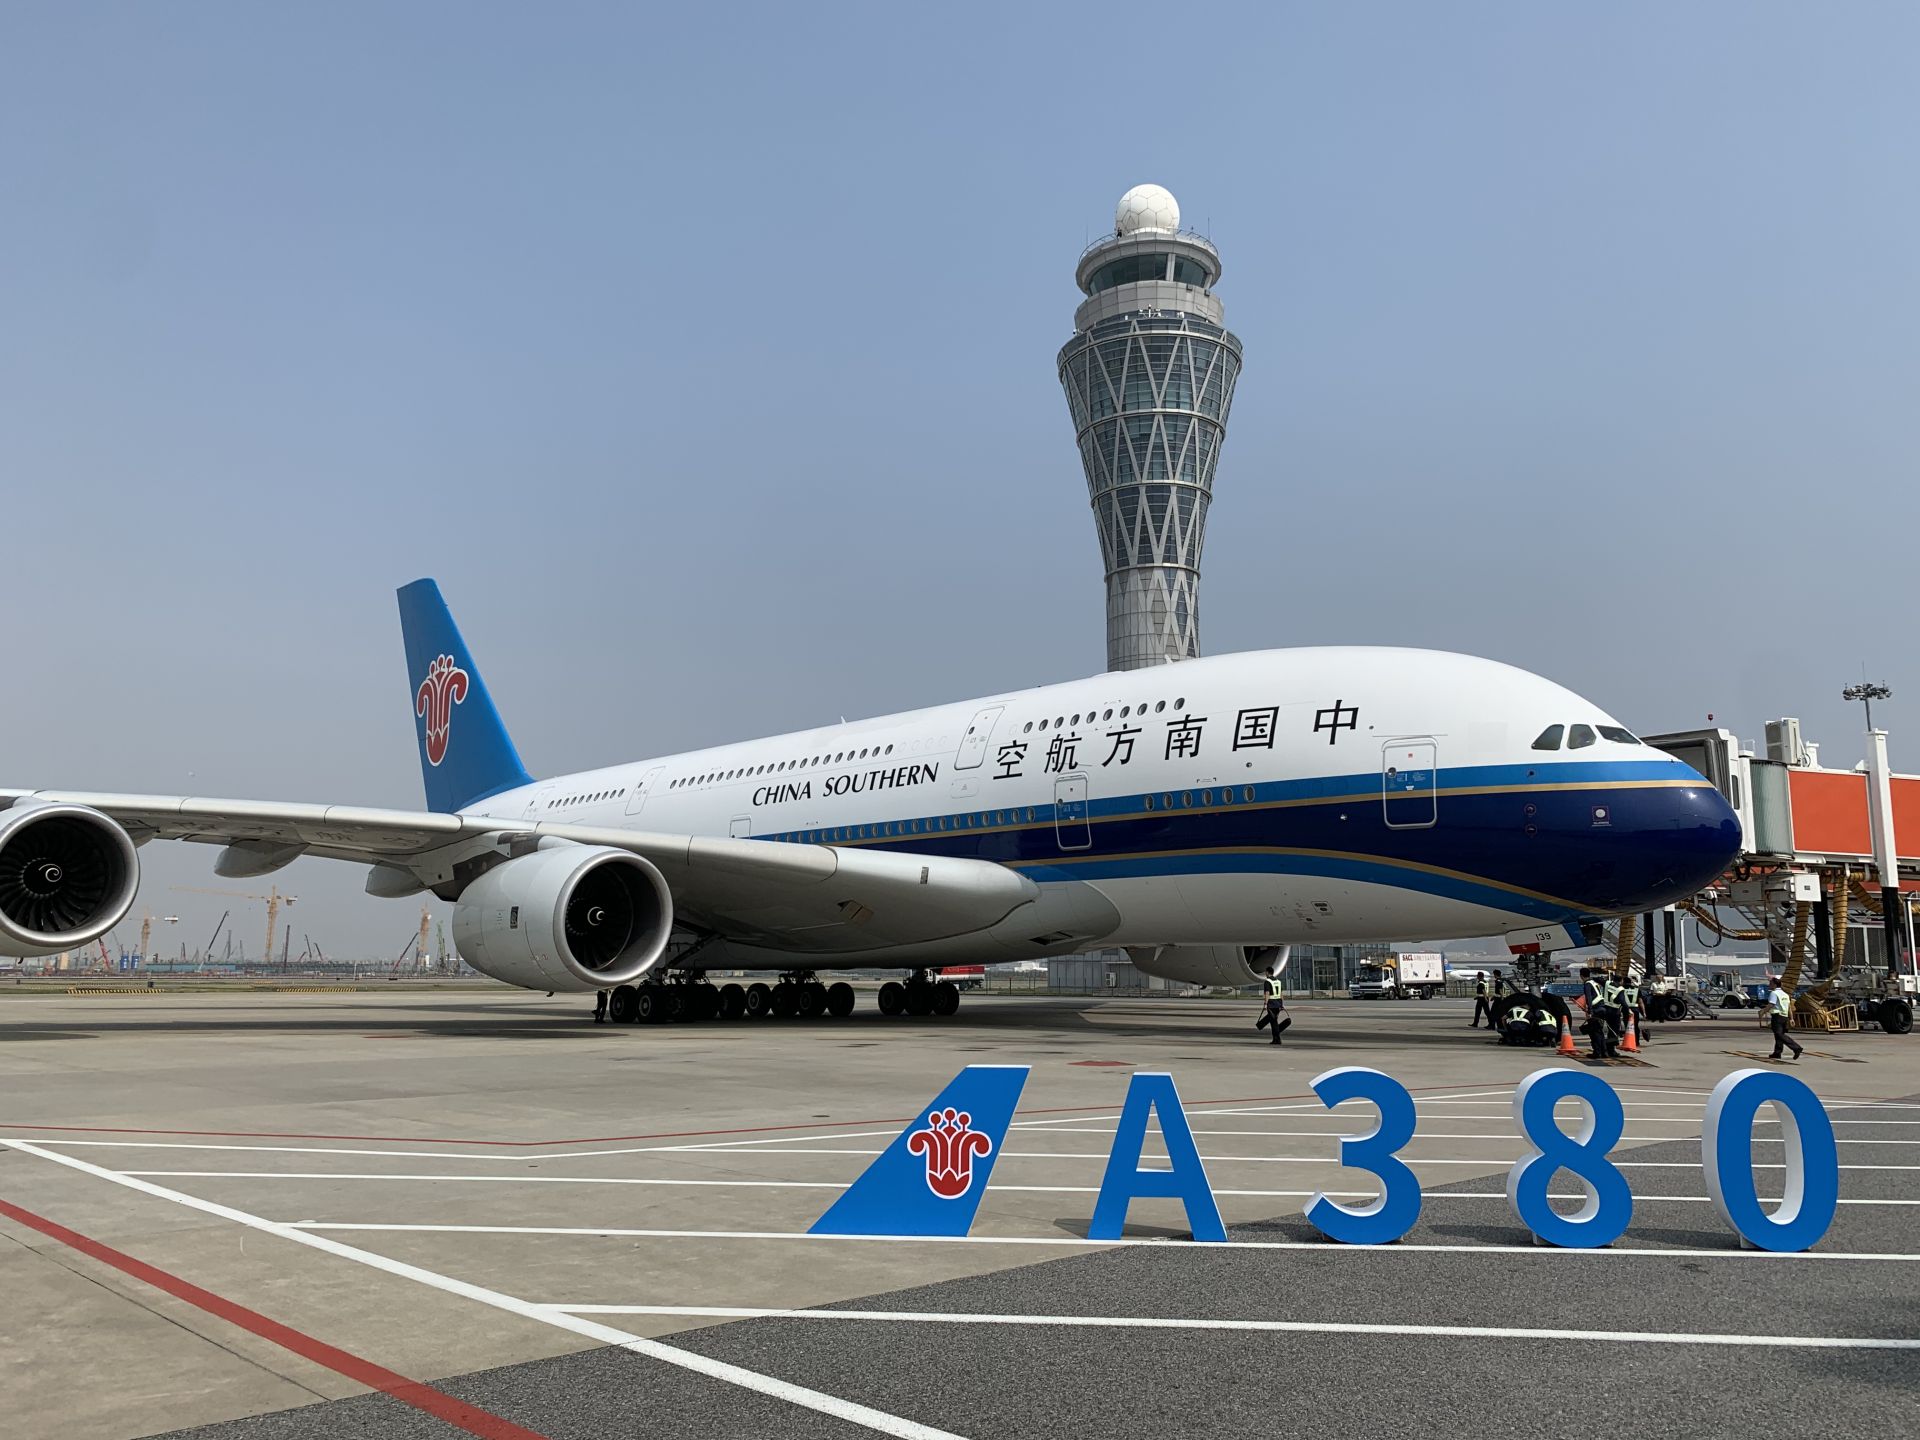 空中巨无霸再飞深圳机场南航a380客机执飞深圳北京